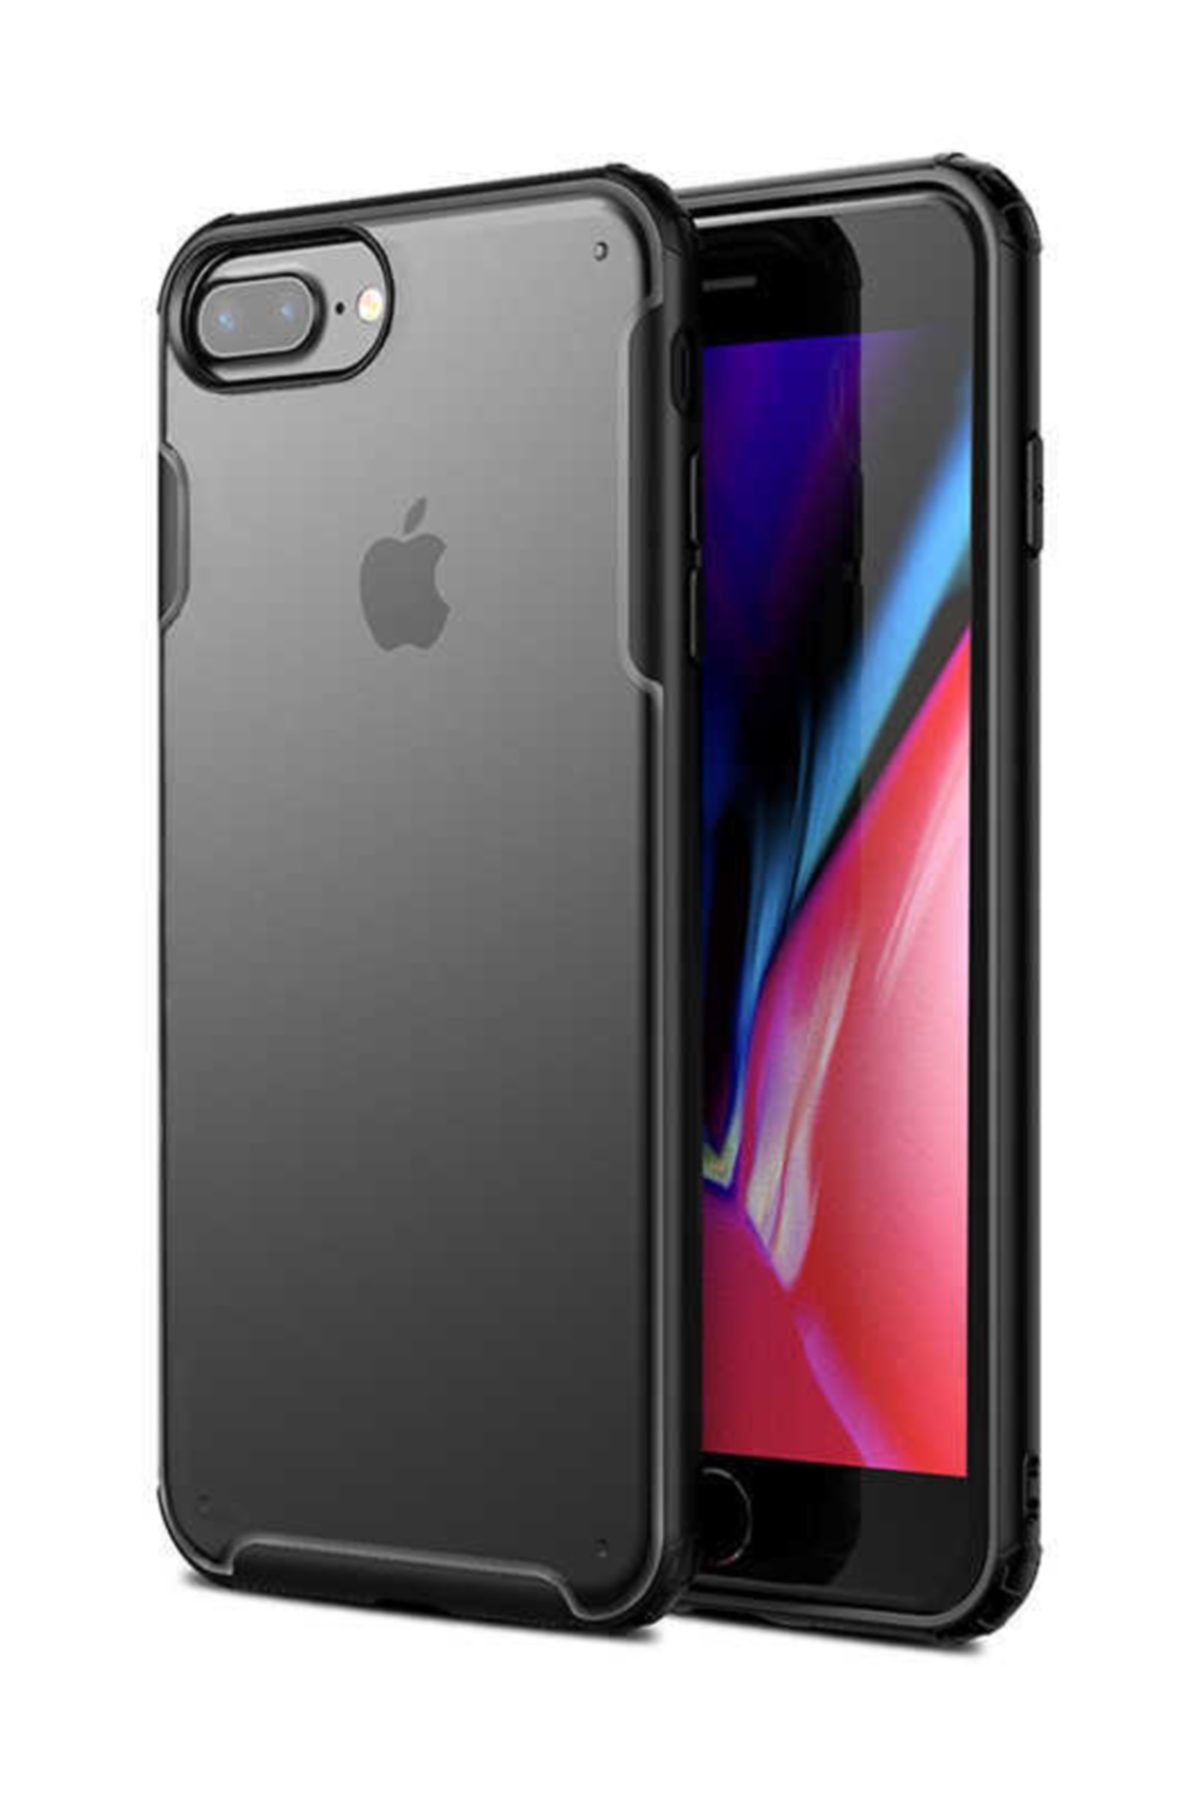 KNY Apple Iphone 7 Plus Kılıf Renkli Silikon Kenarlı Sert Volks Kapak